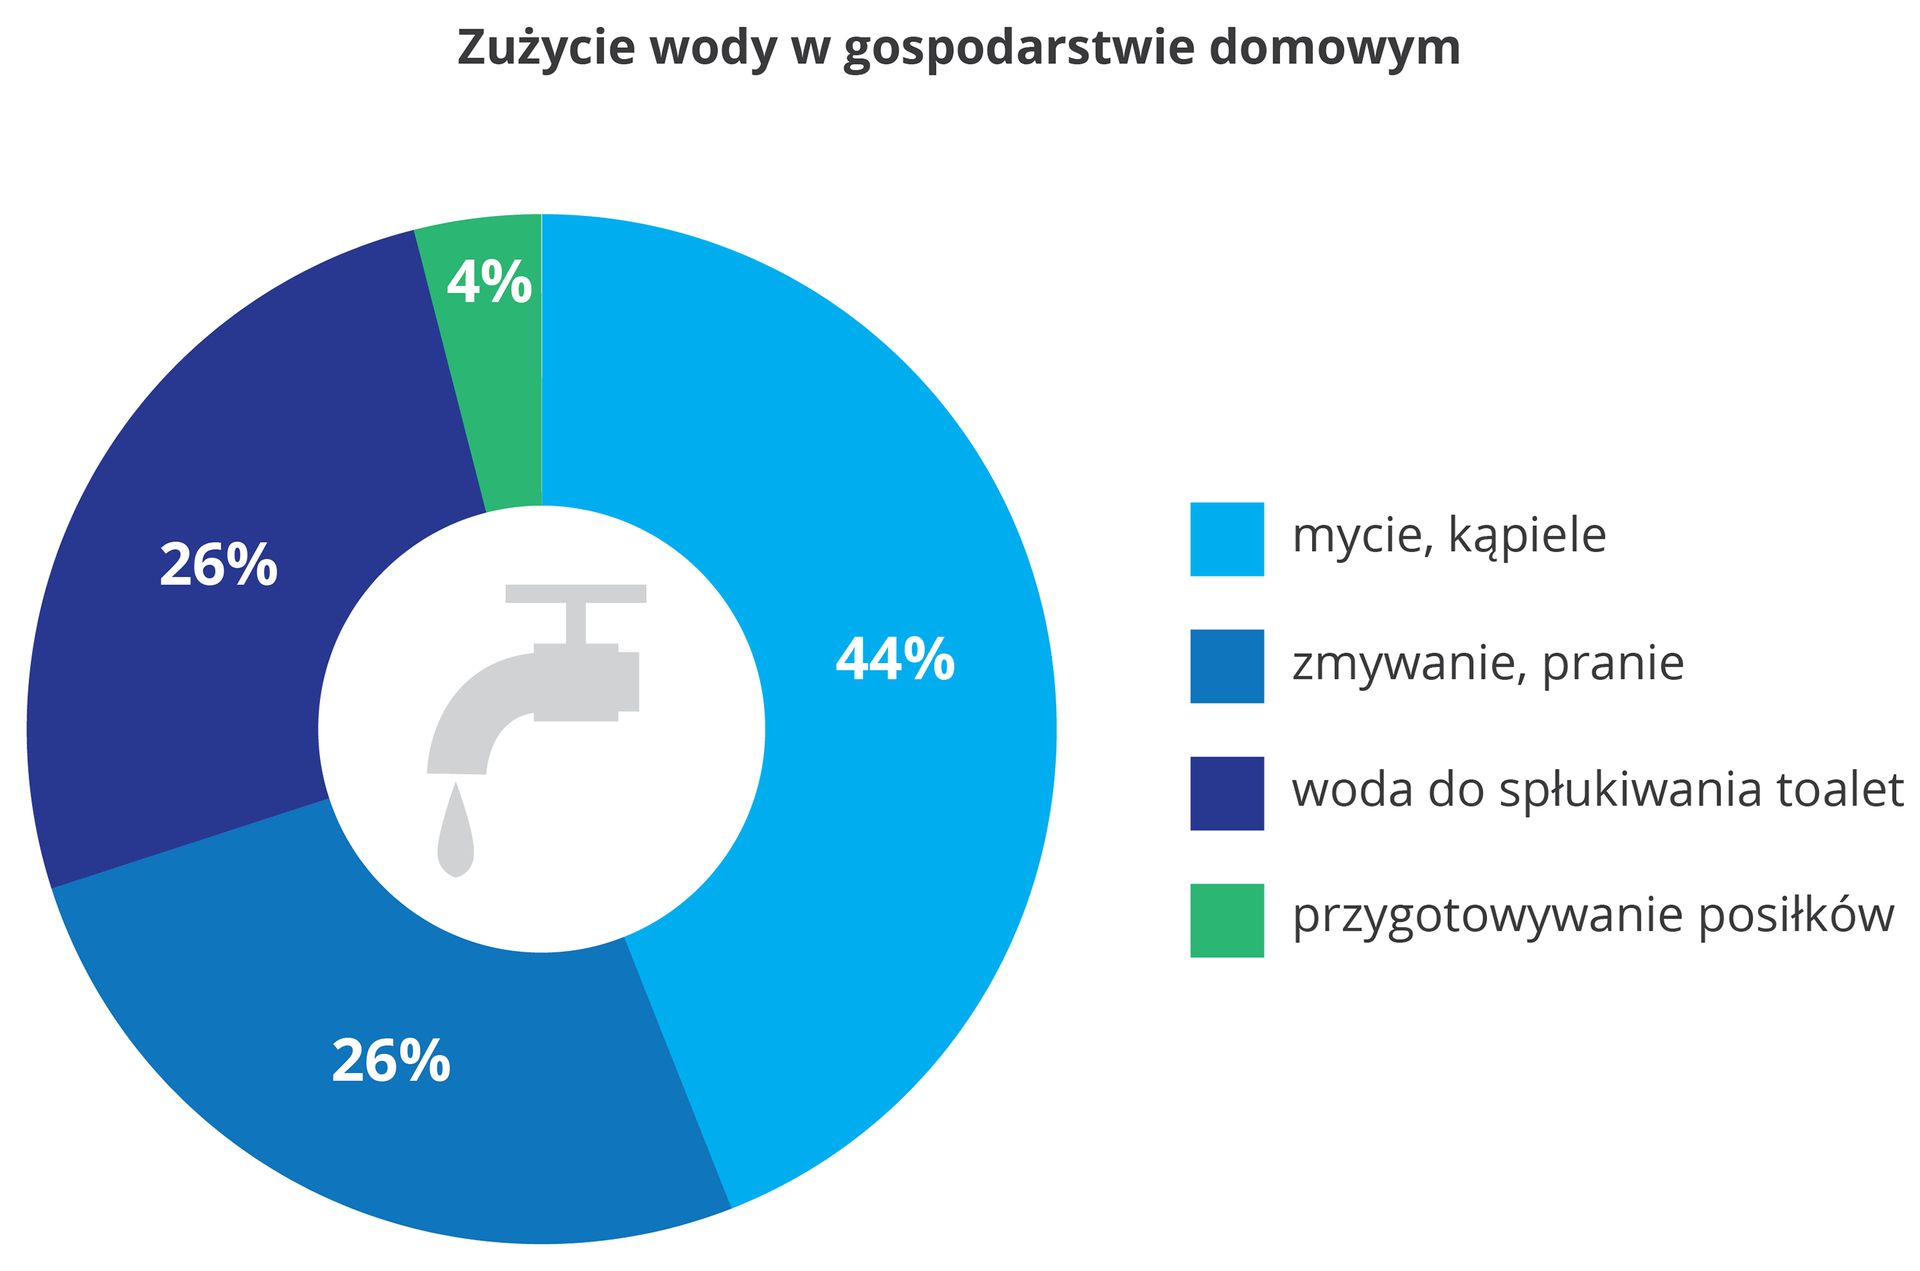 Diagram pierścieniowy w odcieniach niebieskiego z szarym kranem w centrum przedstawia zużycie wody w gospodarstwie domowym. 44% zużywane jest na mycie i kąpiele. Po 26% zużywamy na zmywanie i pranie oraz spłukiwanie toalet. 4% wody zużywane jest do przygotowania posiłków.